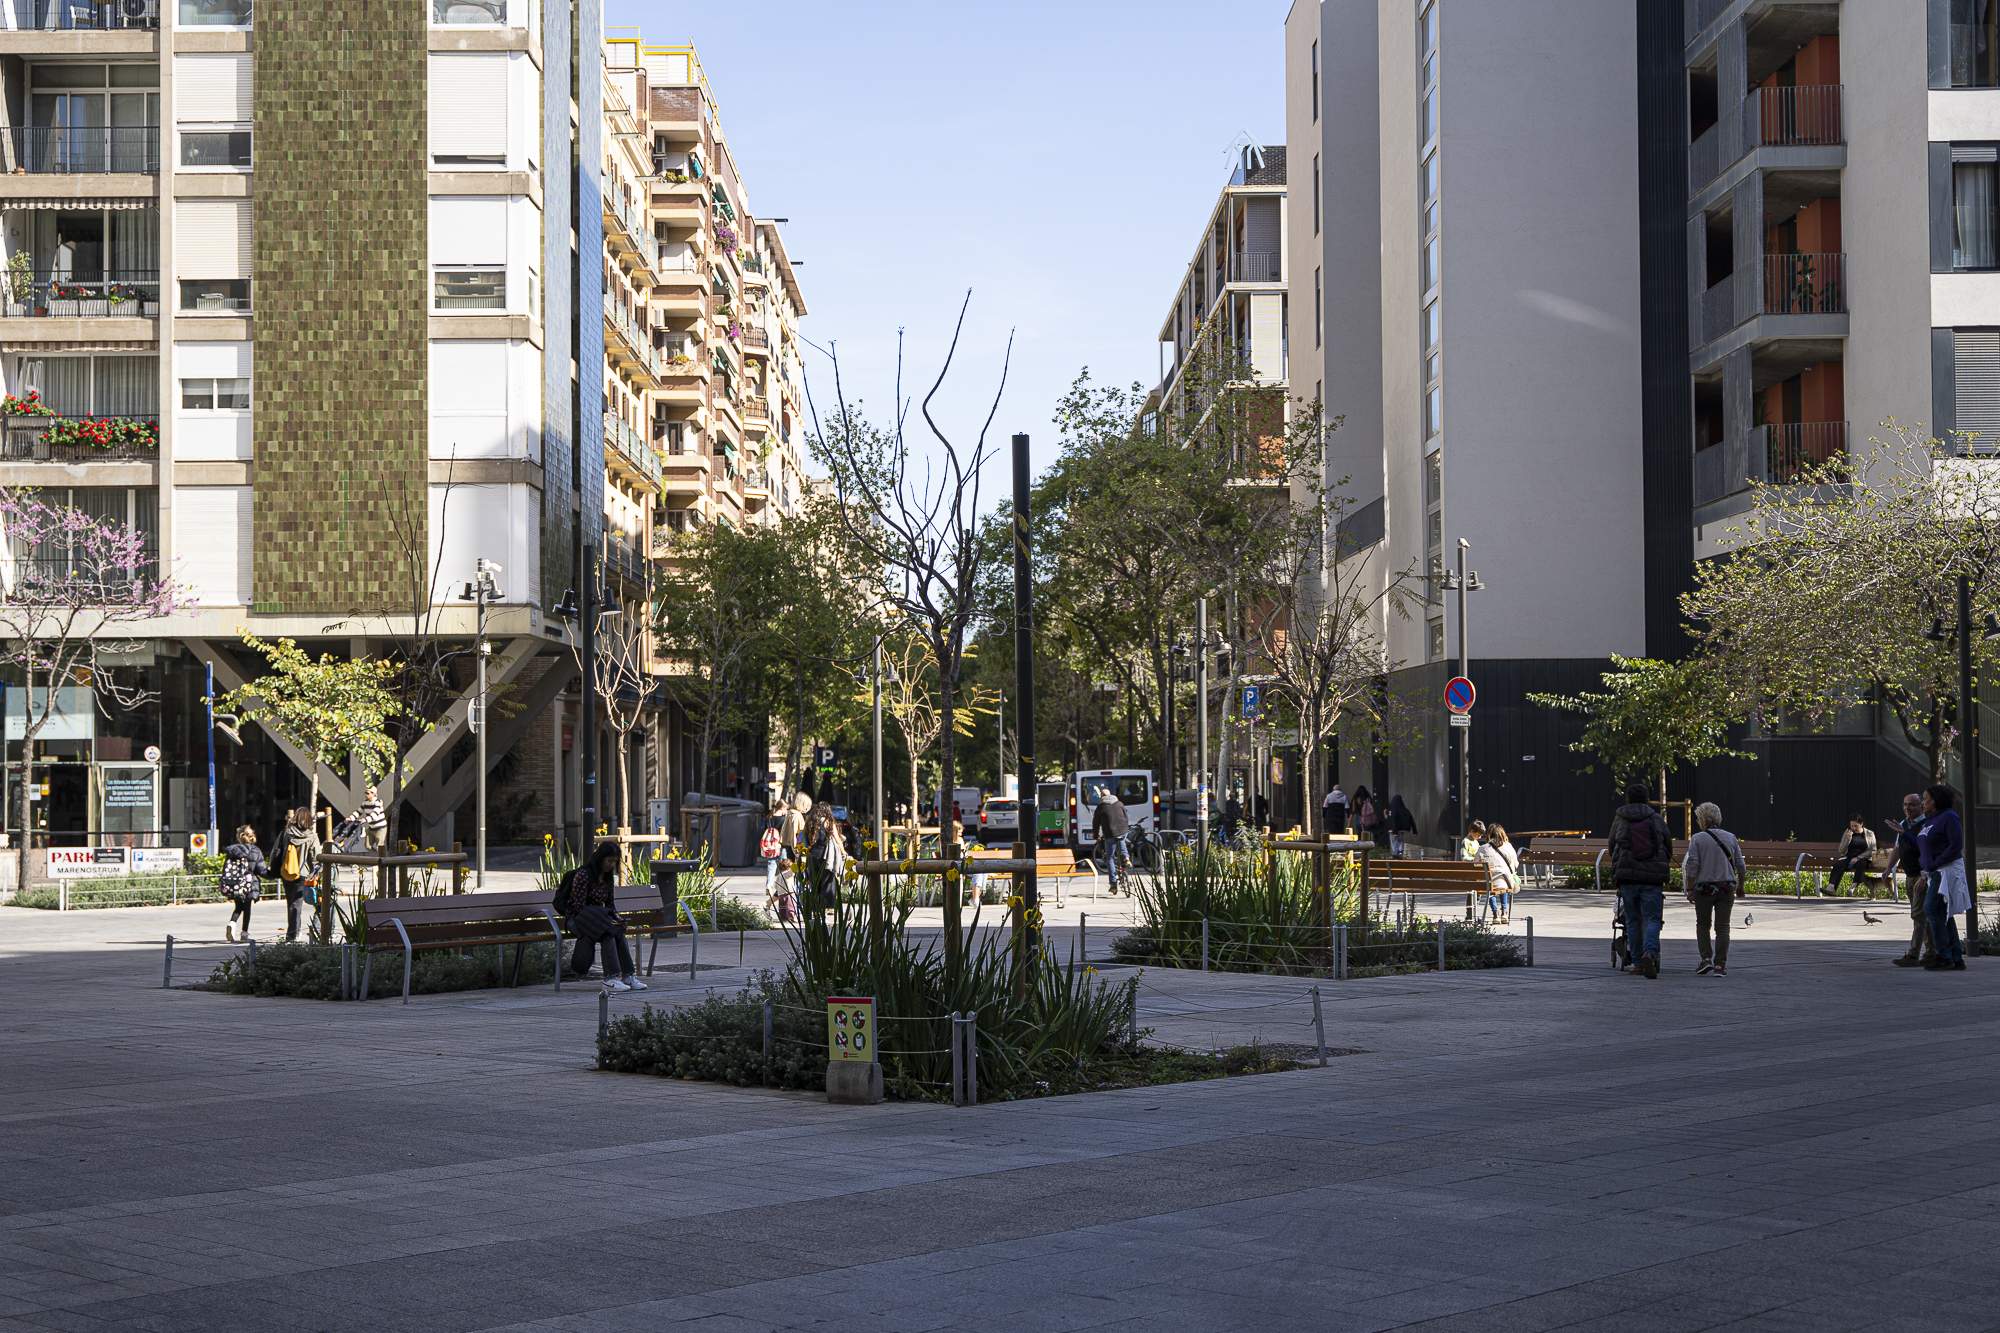 Barcelona descarta más ejes verdes fuera del Eixample por sus "costes y dinámicas de convivencia"